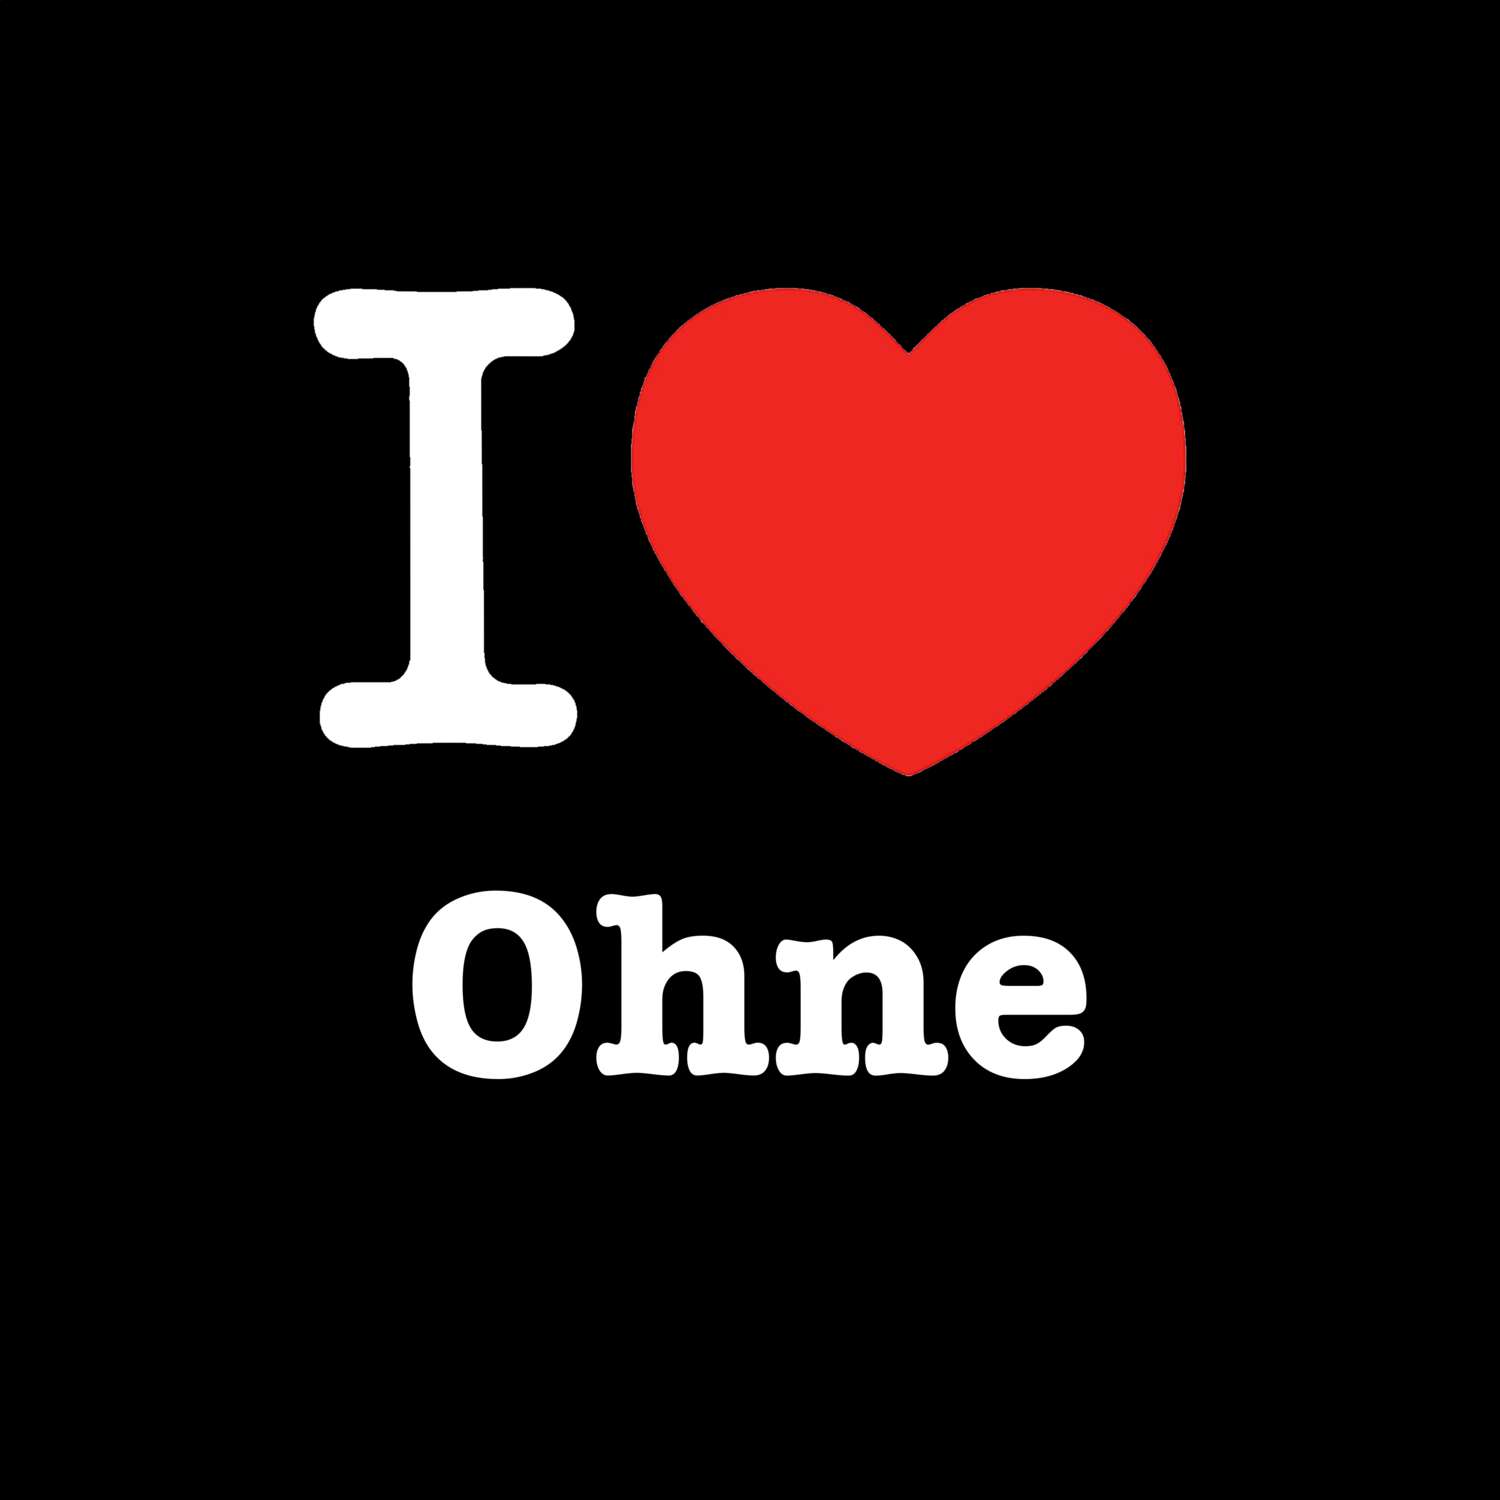 Ohne T-Shirt »I love«